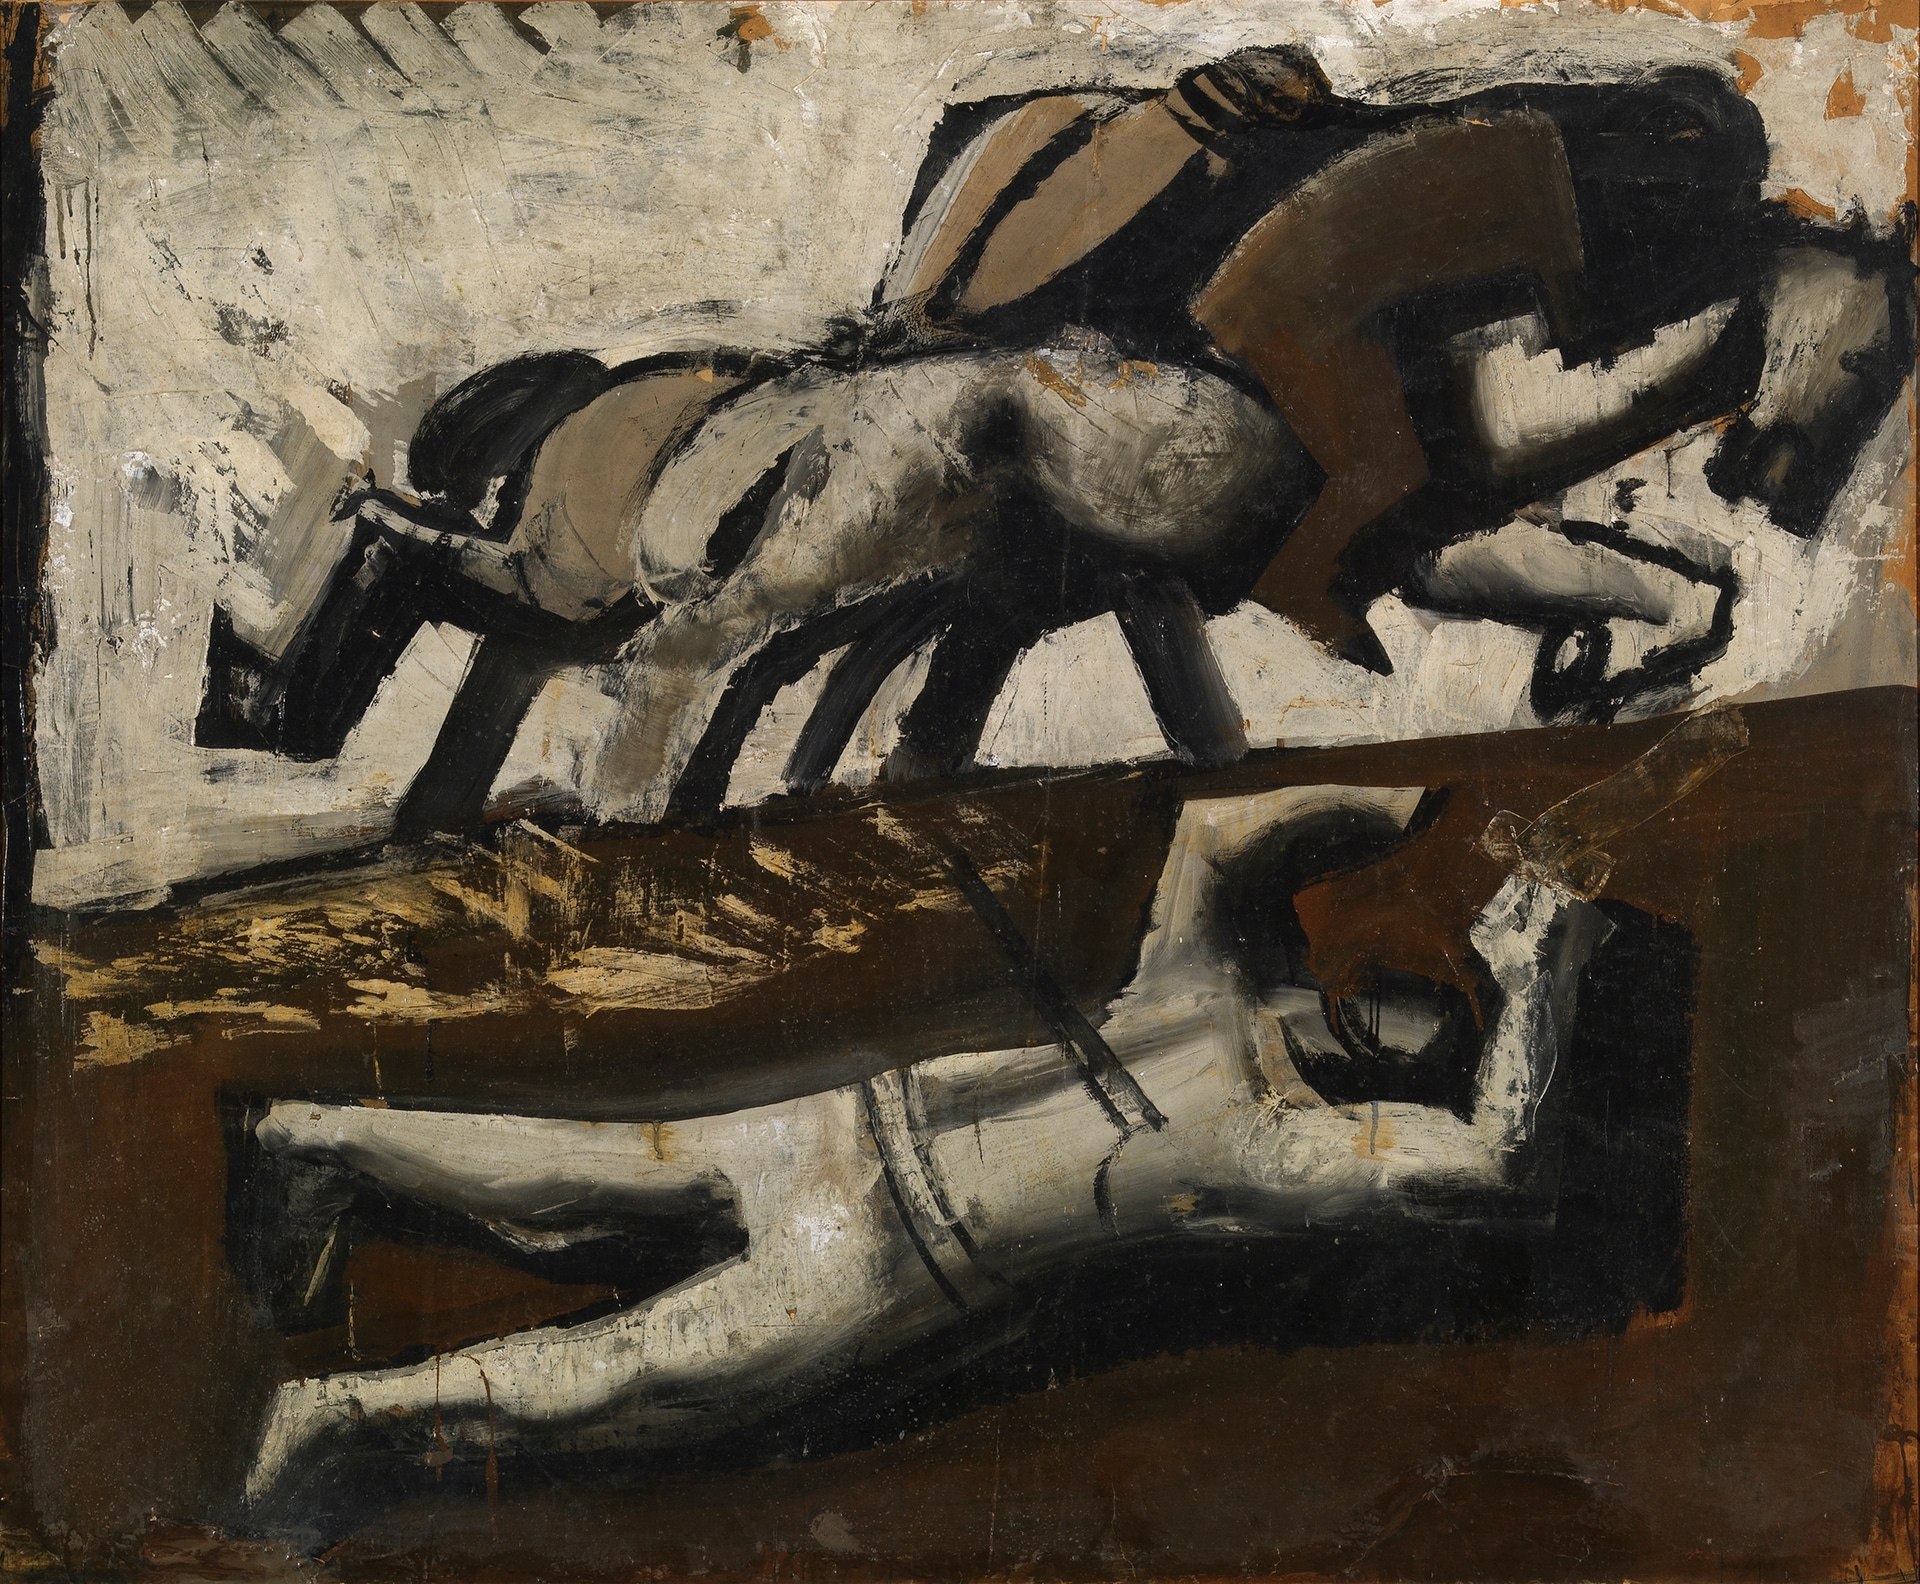 Mario Sironi: Composizione (Cavalli in fuga e caduto), 1942 ca. tempera su carta intelata, 144 x 178 cm, Milano, Museo del Novecento © Mario Sironi, by SIAE 2021 